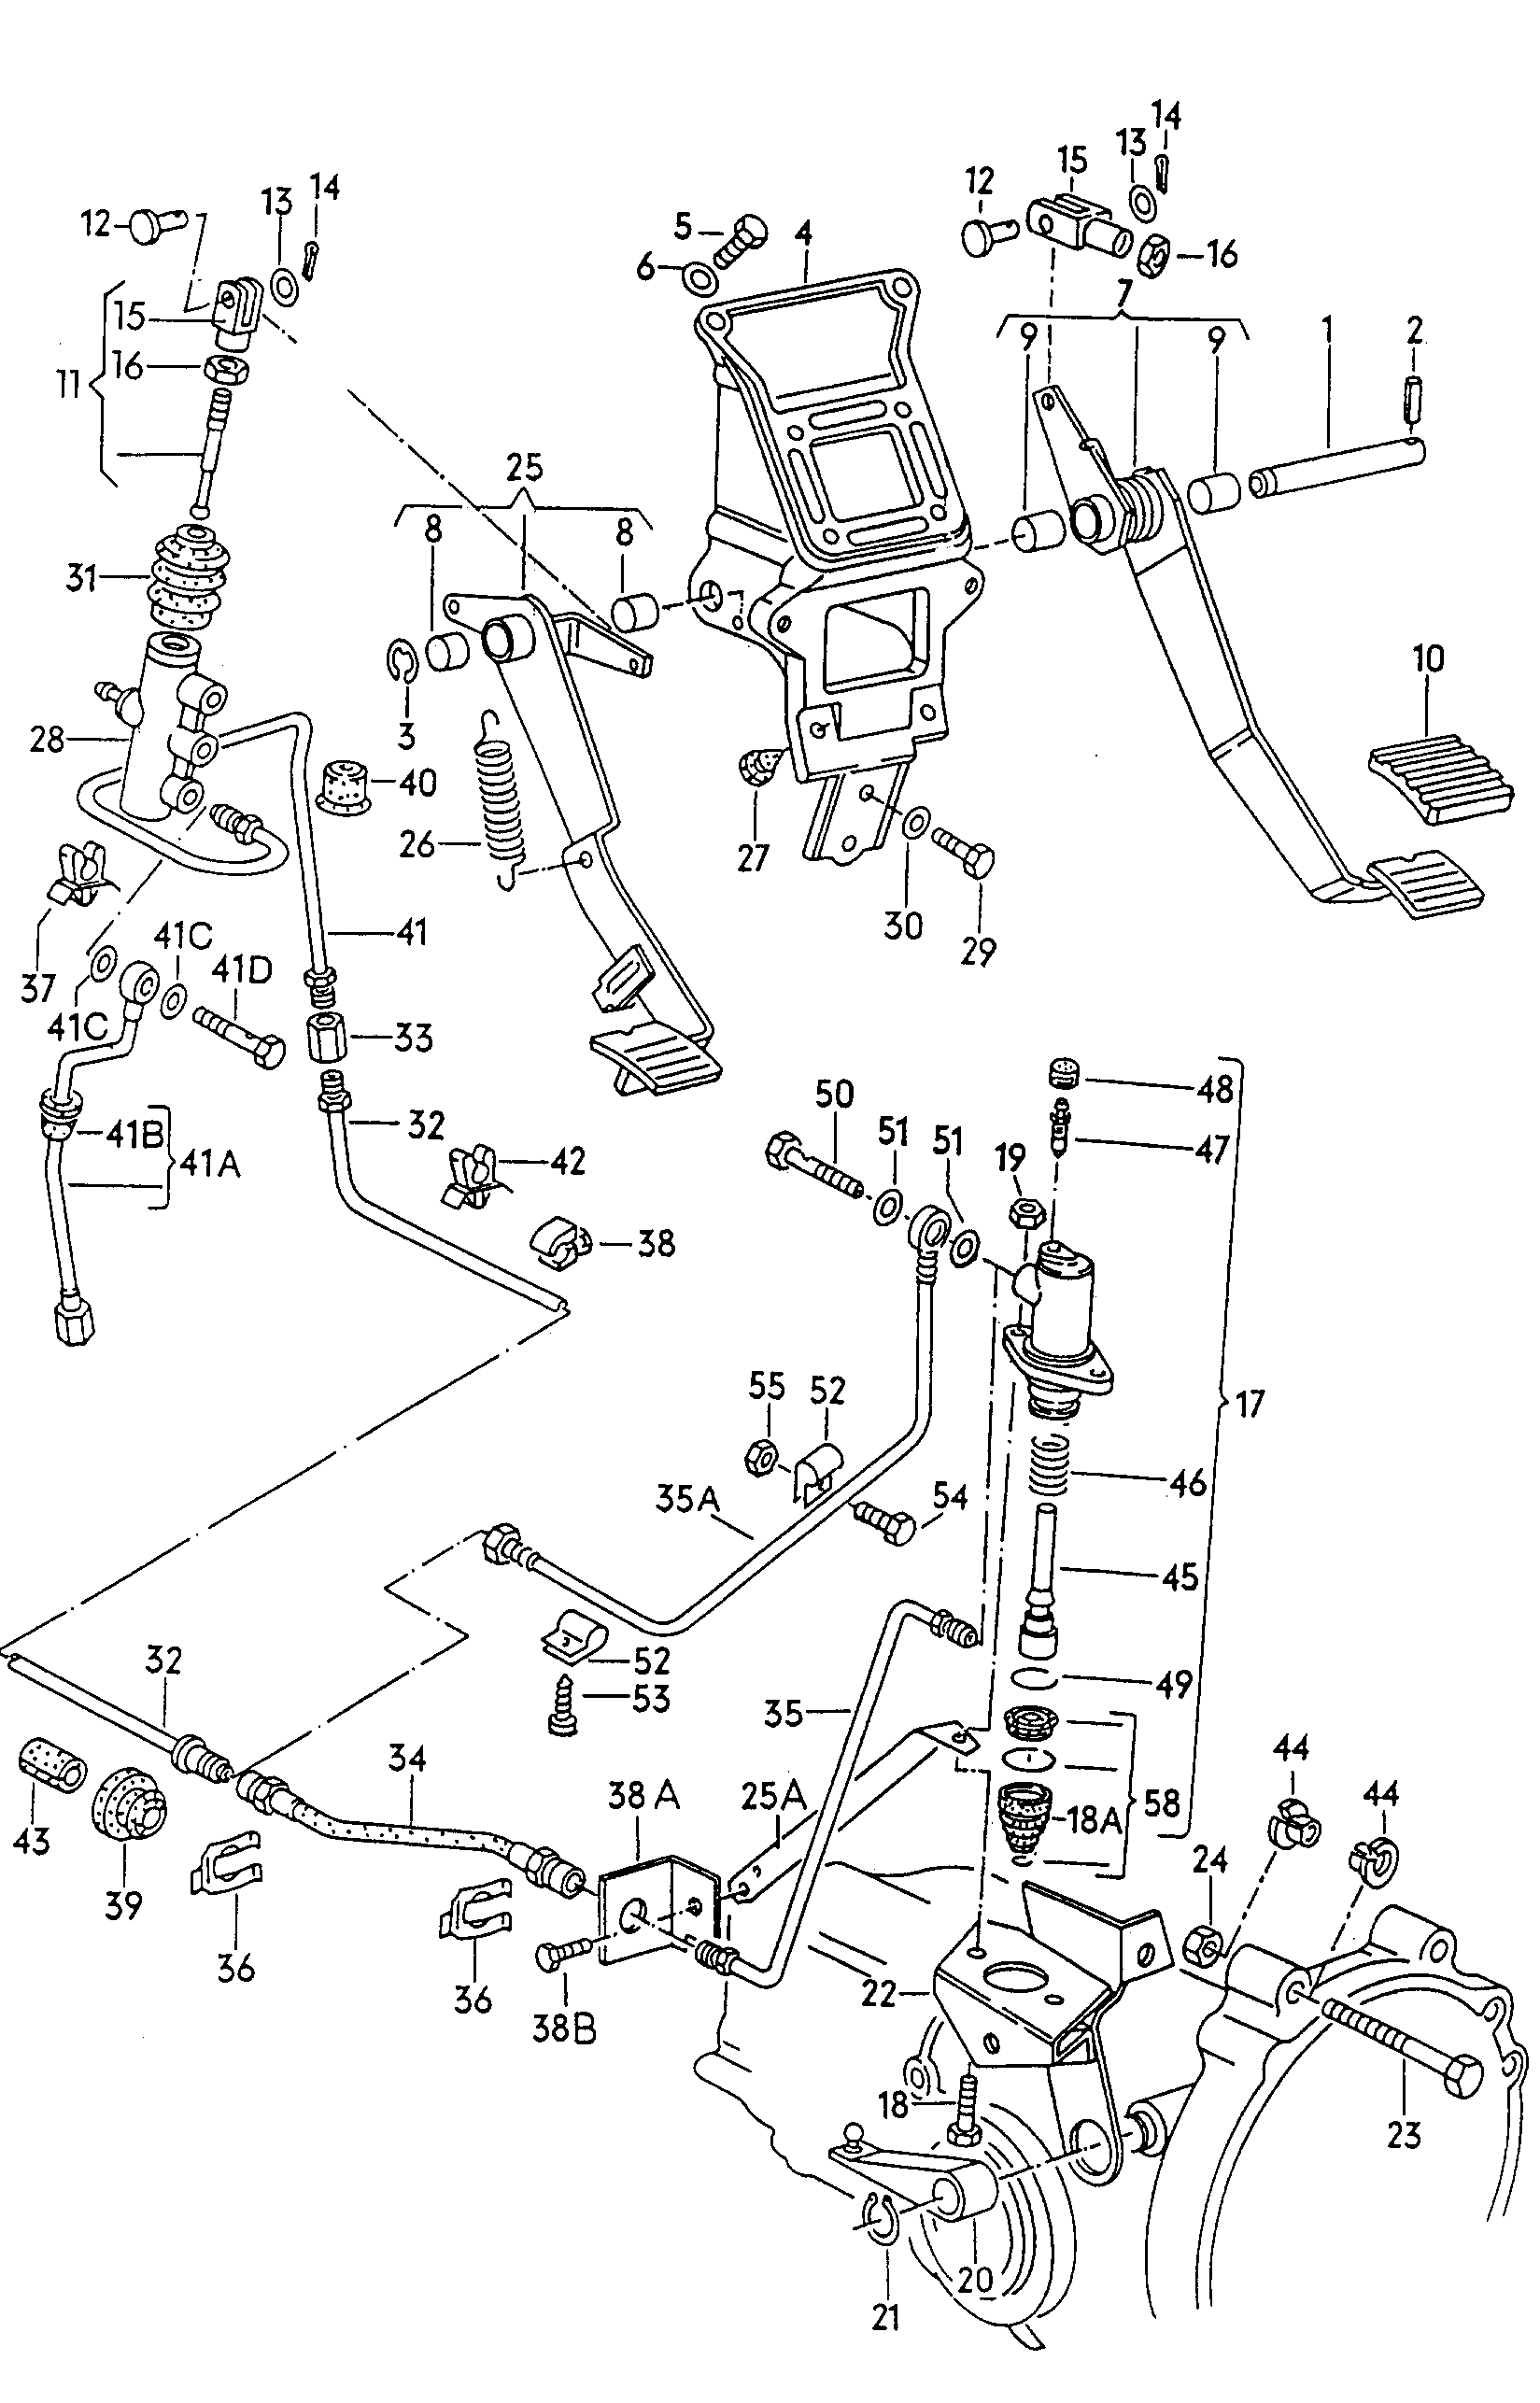 pedaly sprzegla i hamulca<br> dla wersji z wysprzeglaniem<br>hydraulicznym  - Typ 2/syncro - t2